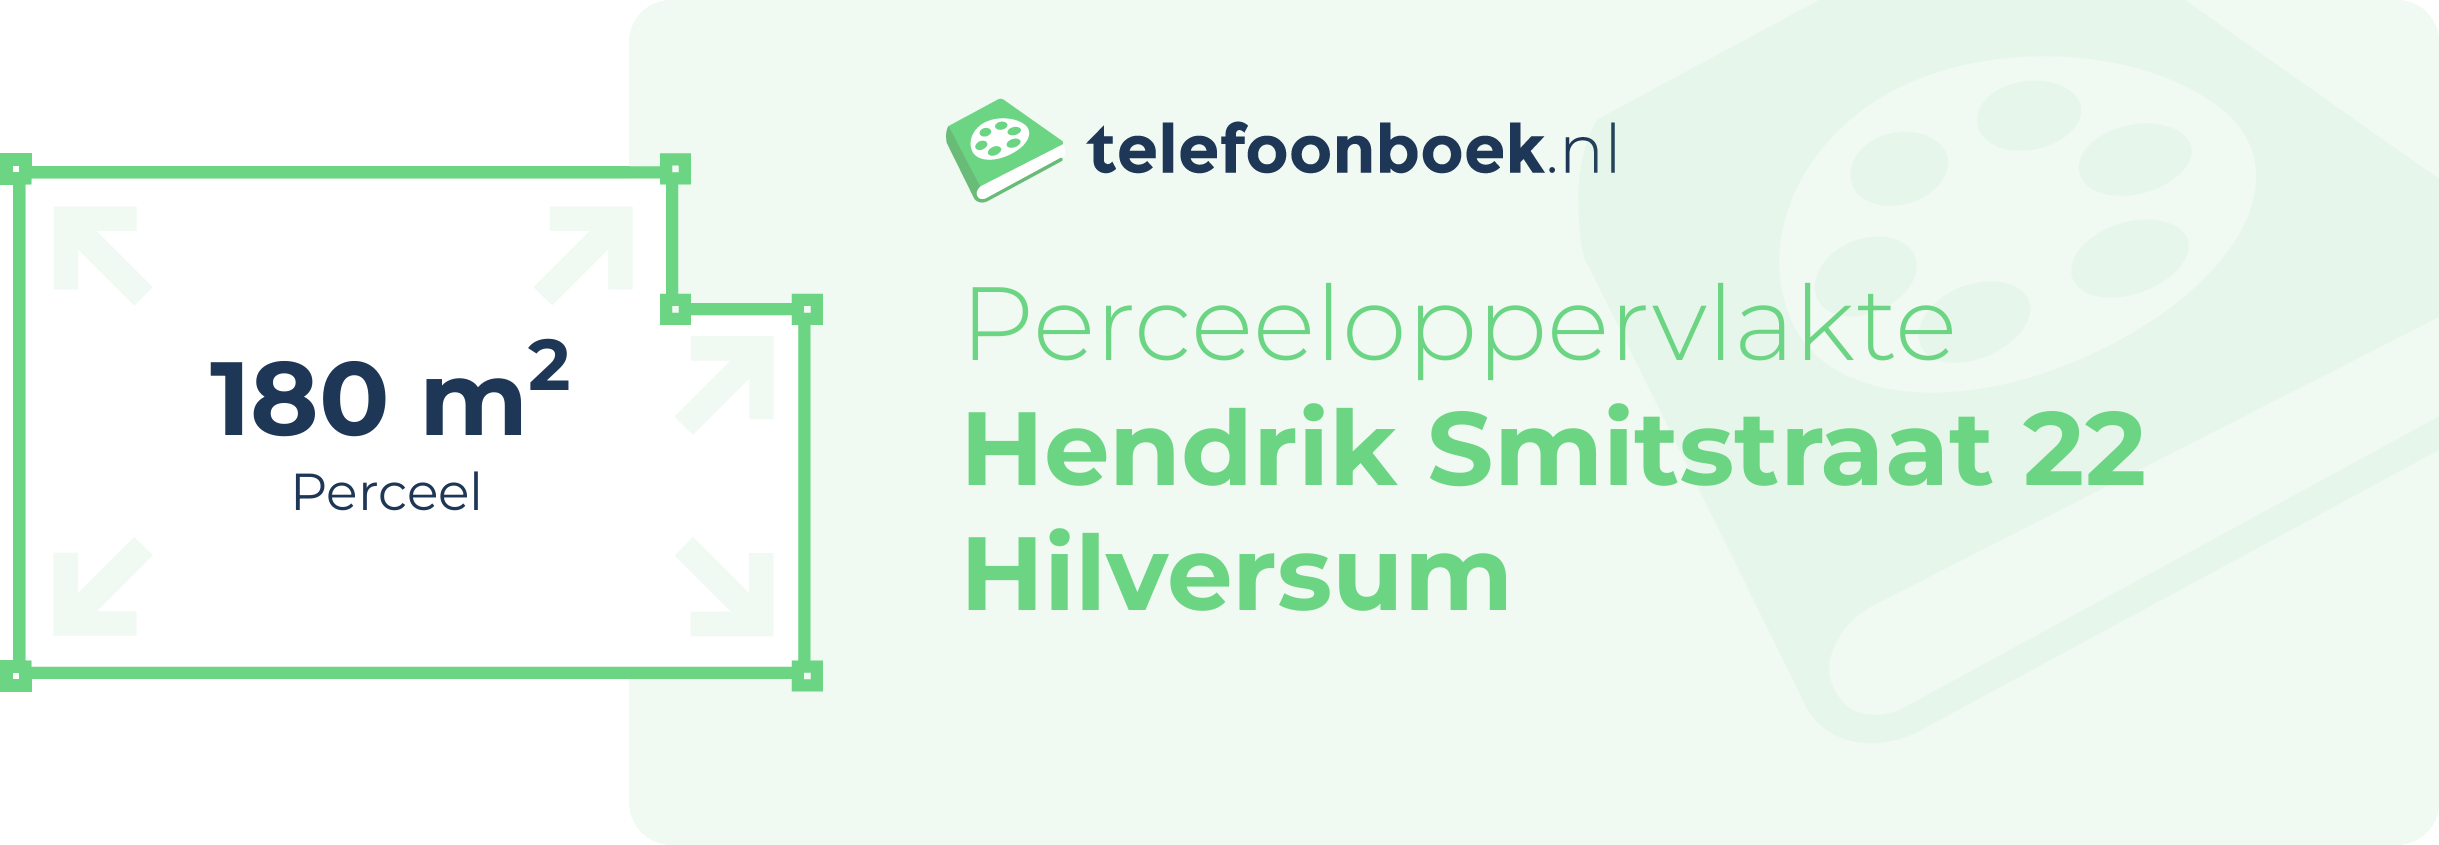 Perceeloppervlakte Hendrik Smitstraat 22 Hilversum